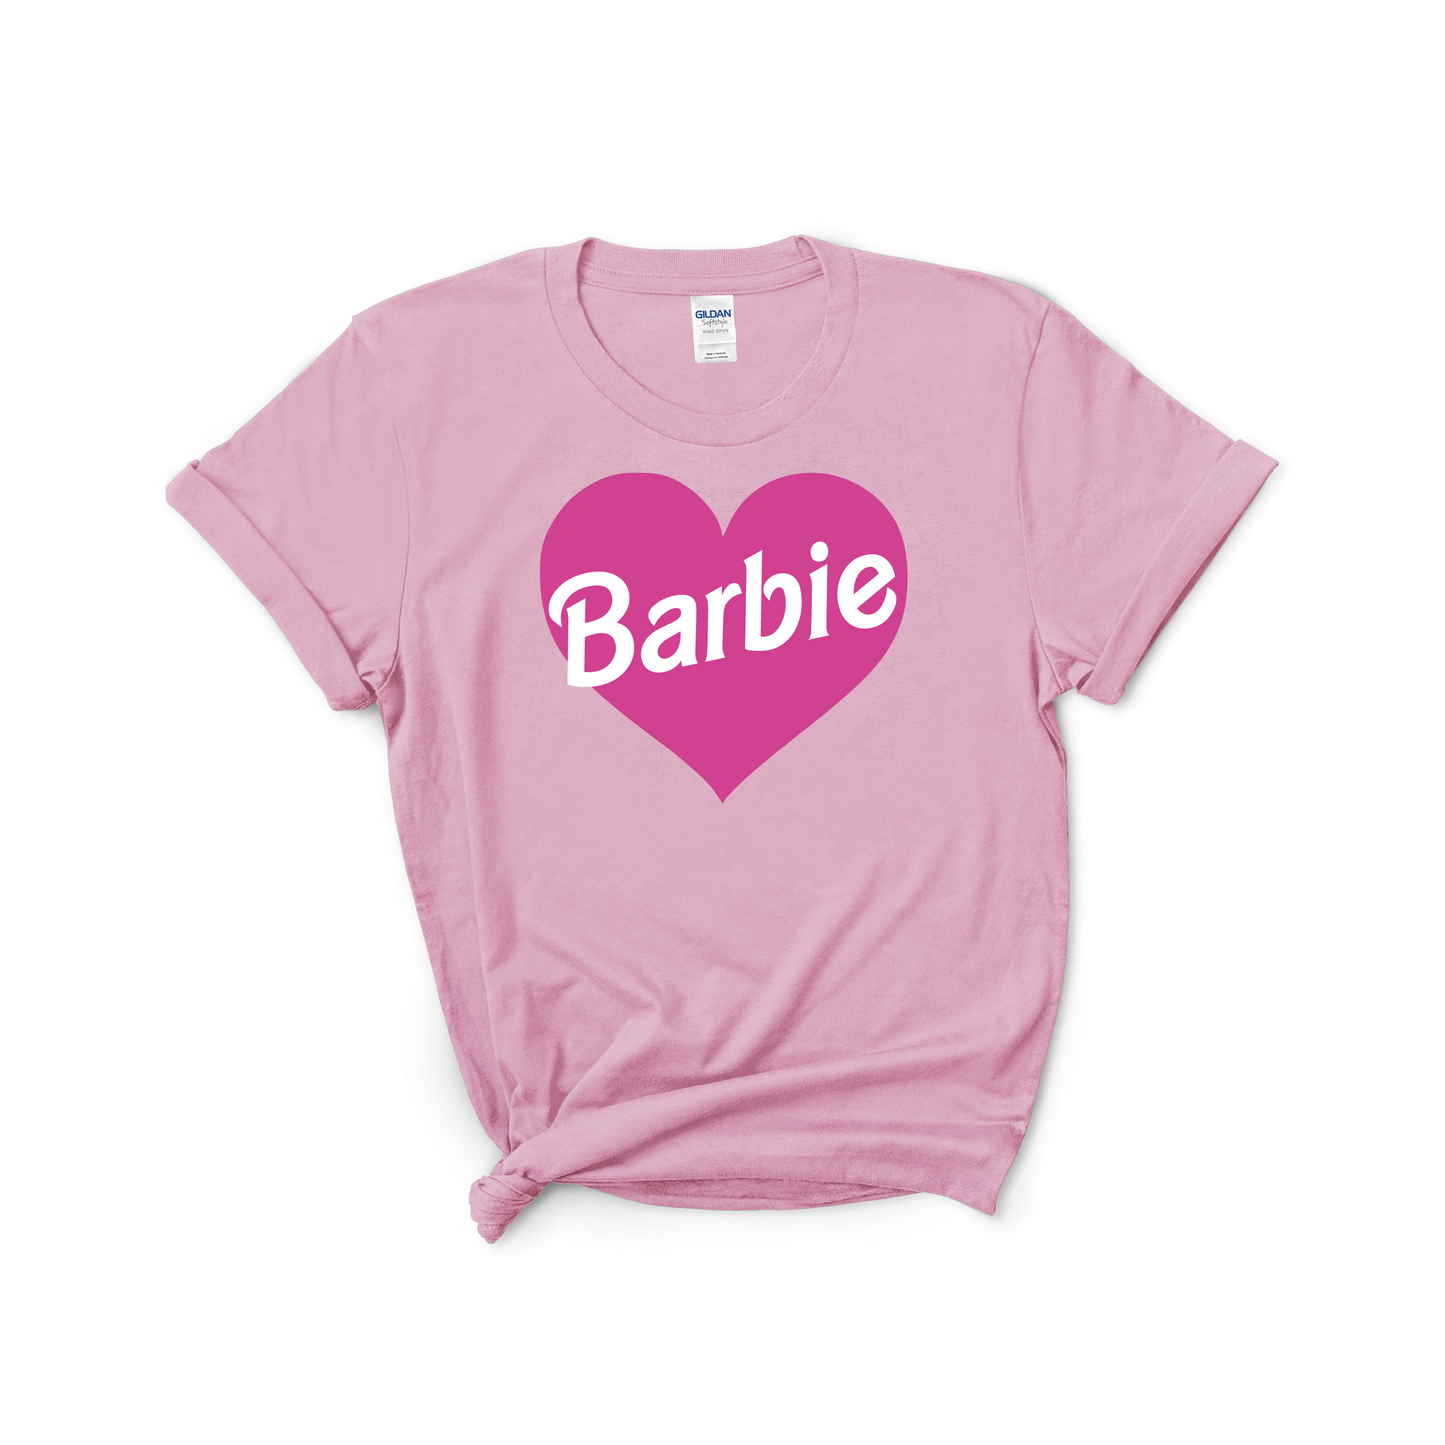 Barbie DTF Transfers